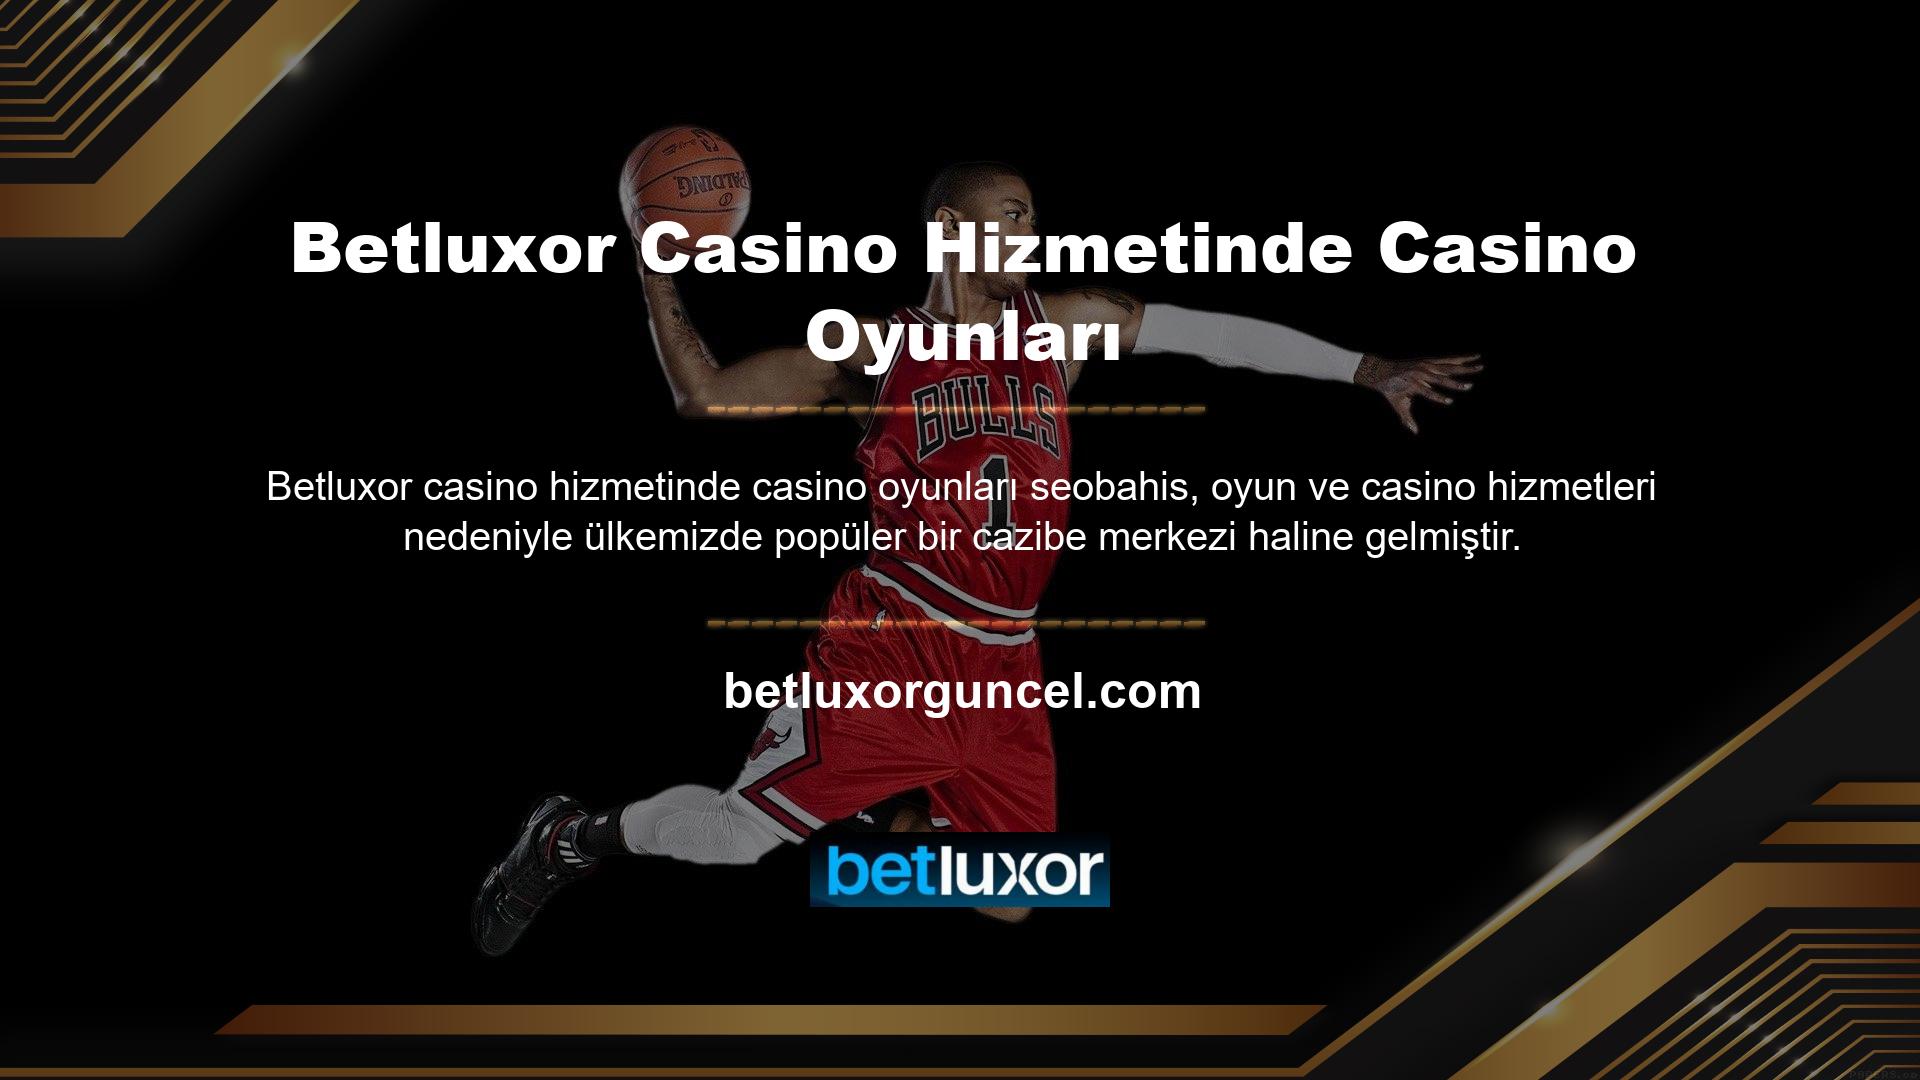 Betluxor casino hizmetindeki bingo oyunları, üyeleri tarafından doğrudan bahis yapılabilir